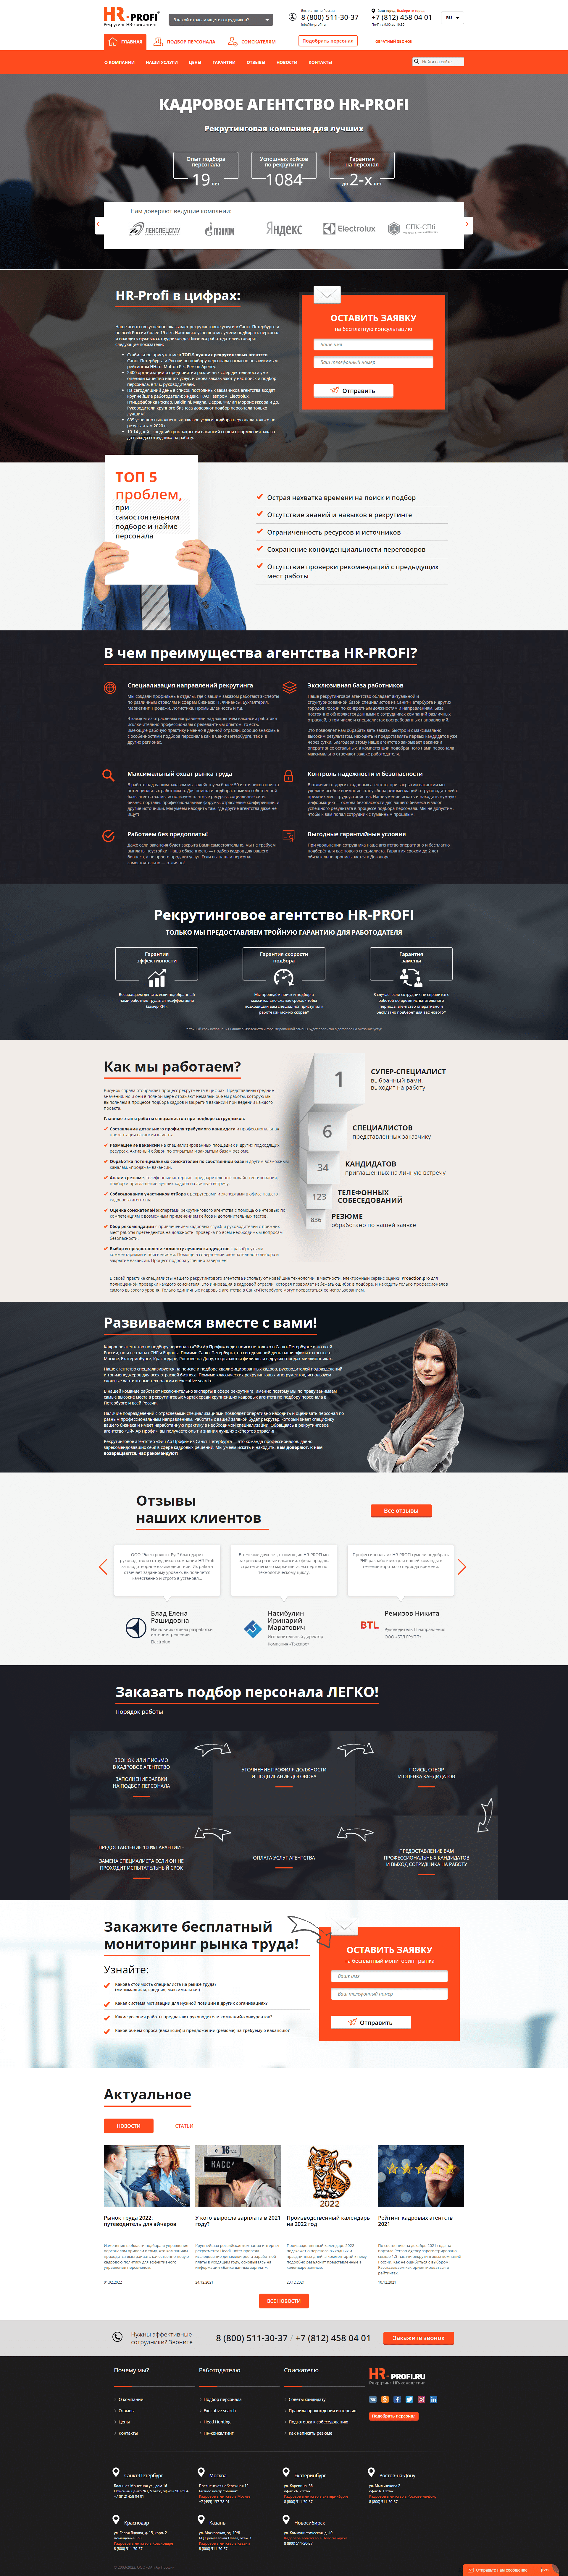 Пример hr-profi.ru сайта из рекламной выдачи